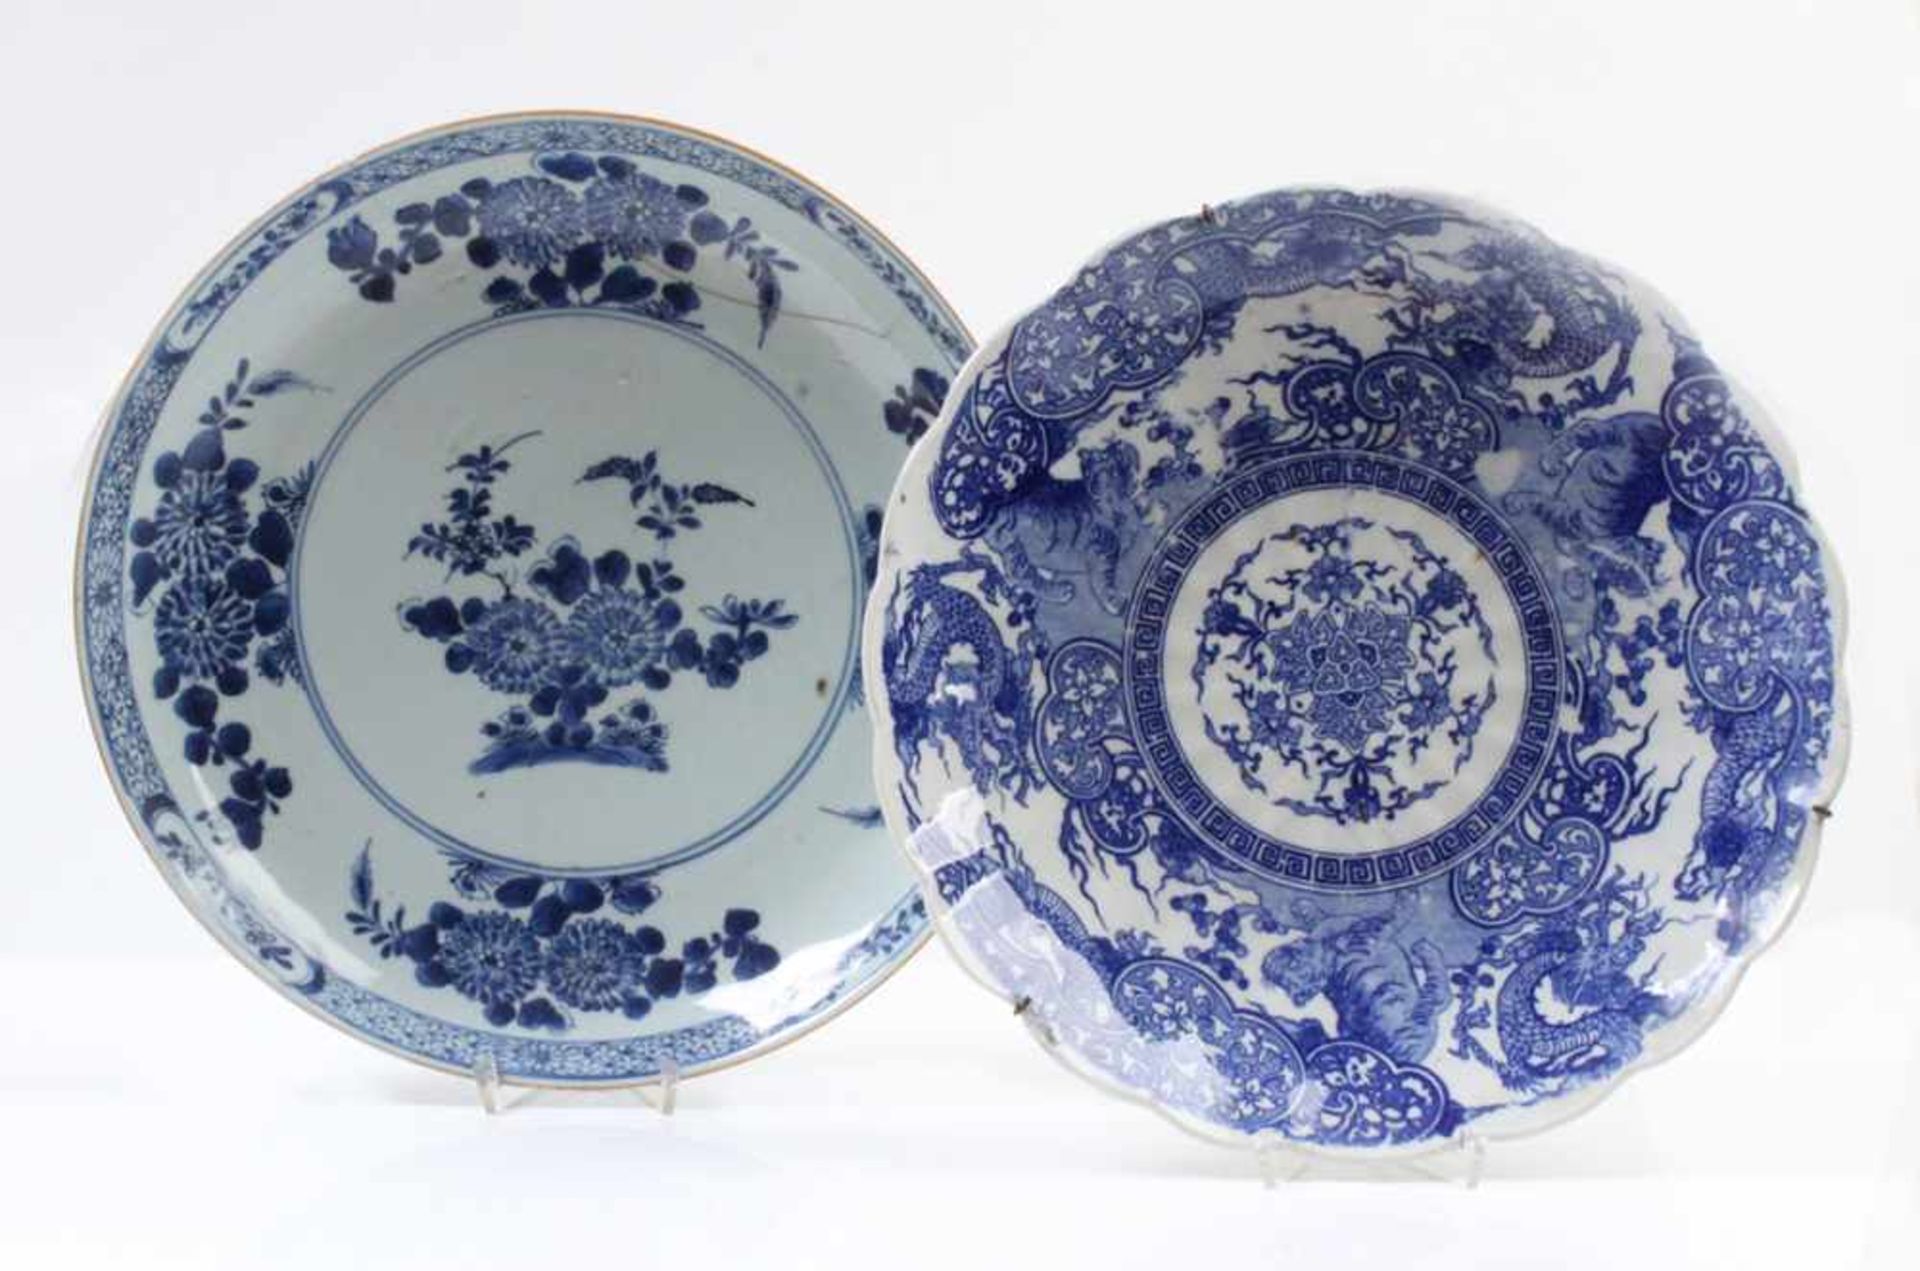 Zwei Platten.China, 18./19. Jh. Porzellan. Blauer Chrysanthemendekor. Randausbruch geklebt.